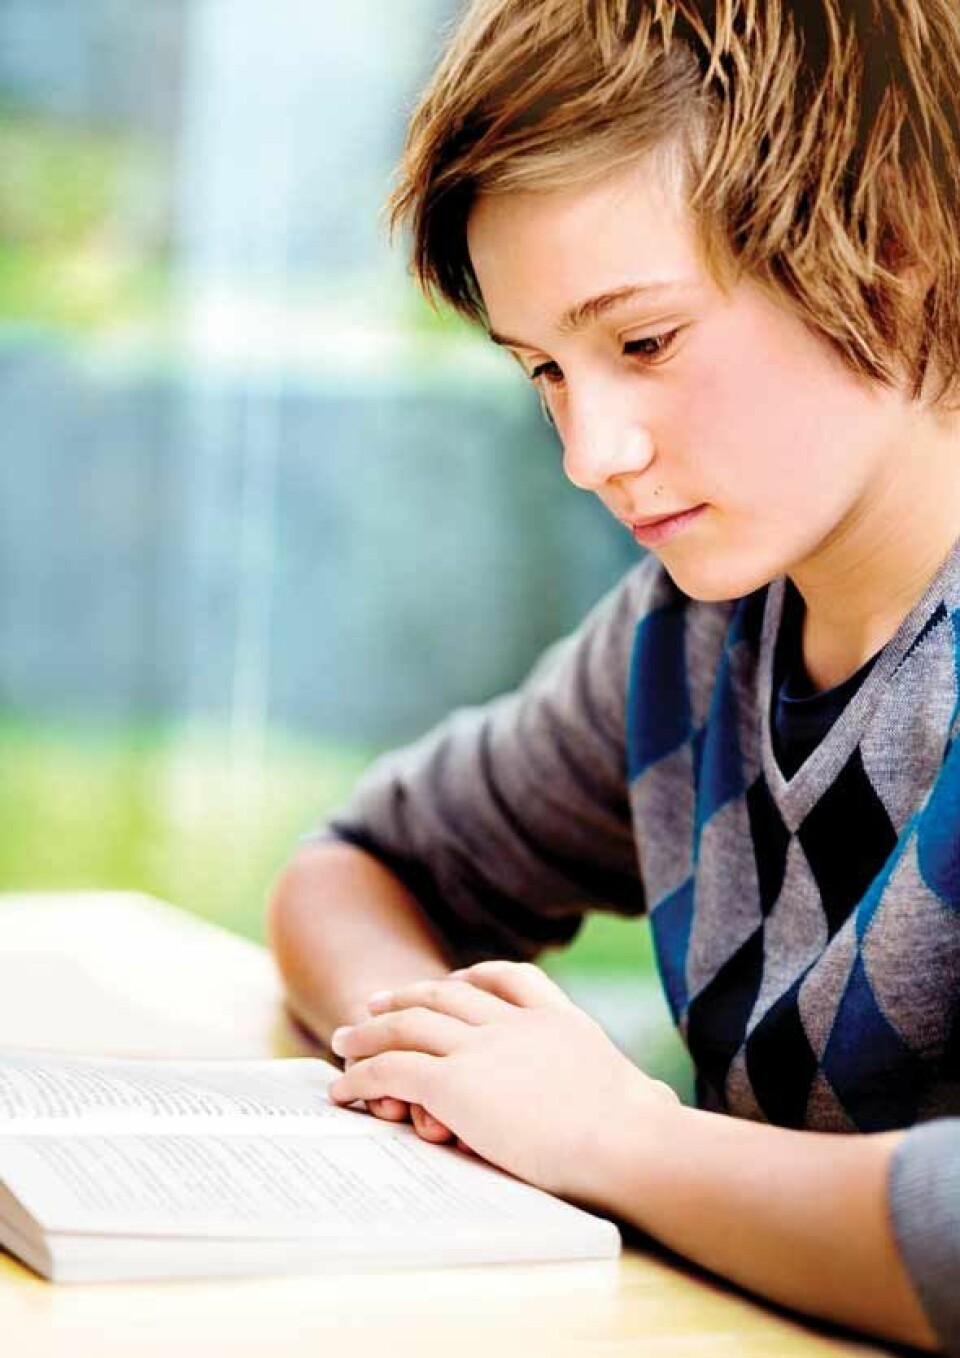 I en undersøkelse av gutters leselyst foretatt av Lesesenteret ved UiS, svarer gutter i 14-15-årsalderen at lesing er det siste de ønsker å drive med dersom de trenger tidsfordriv.